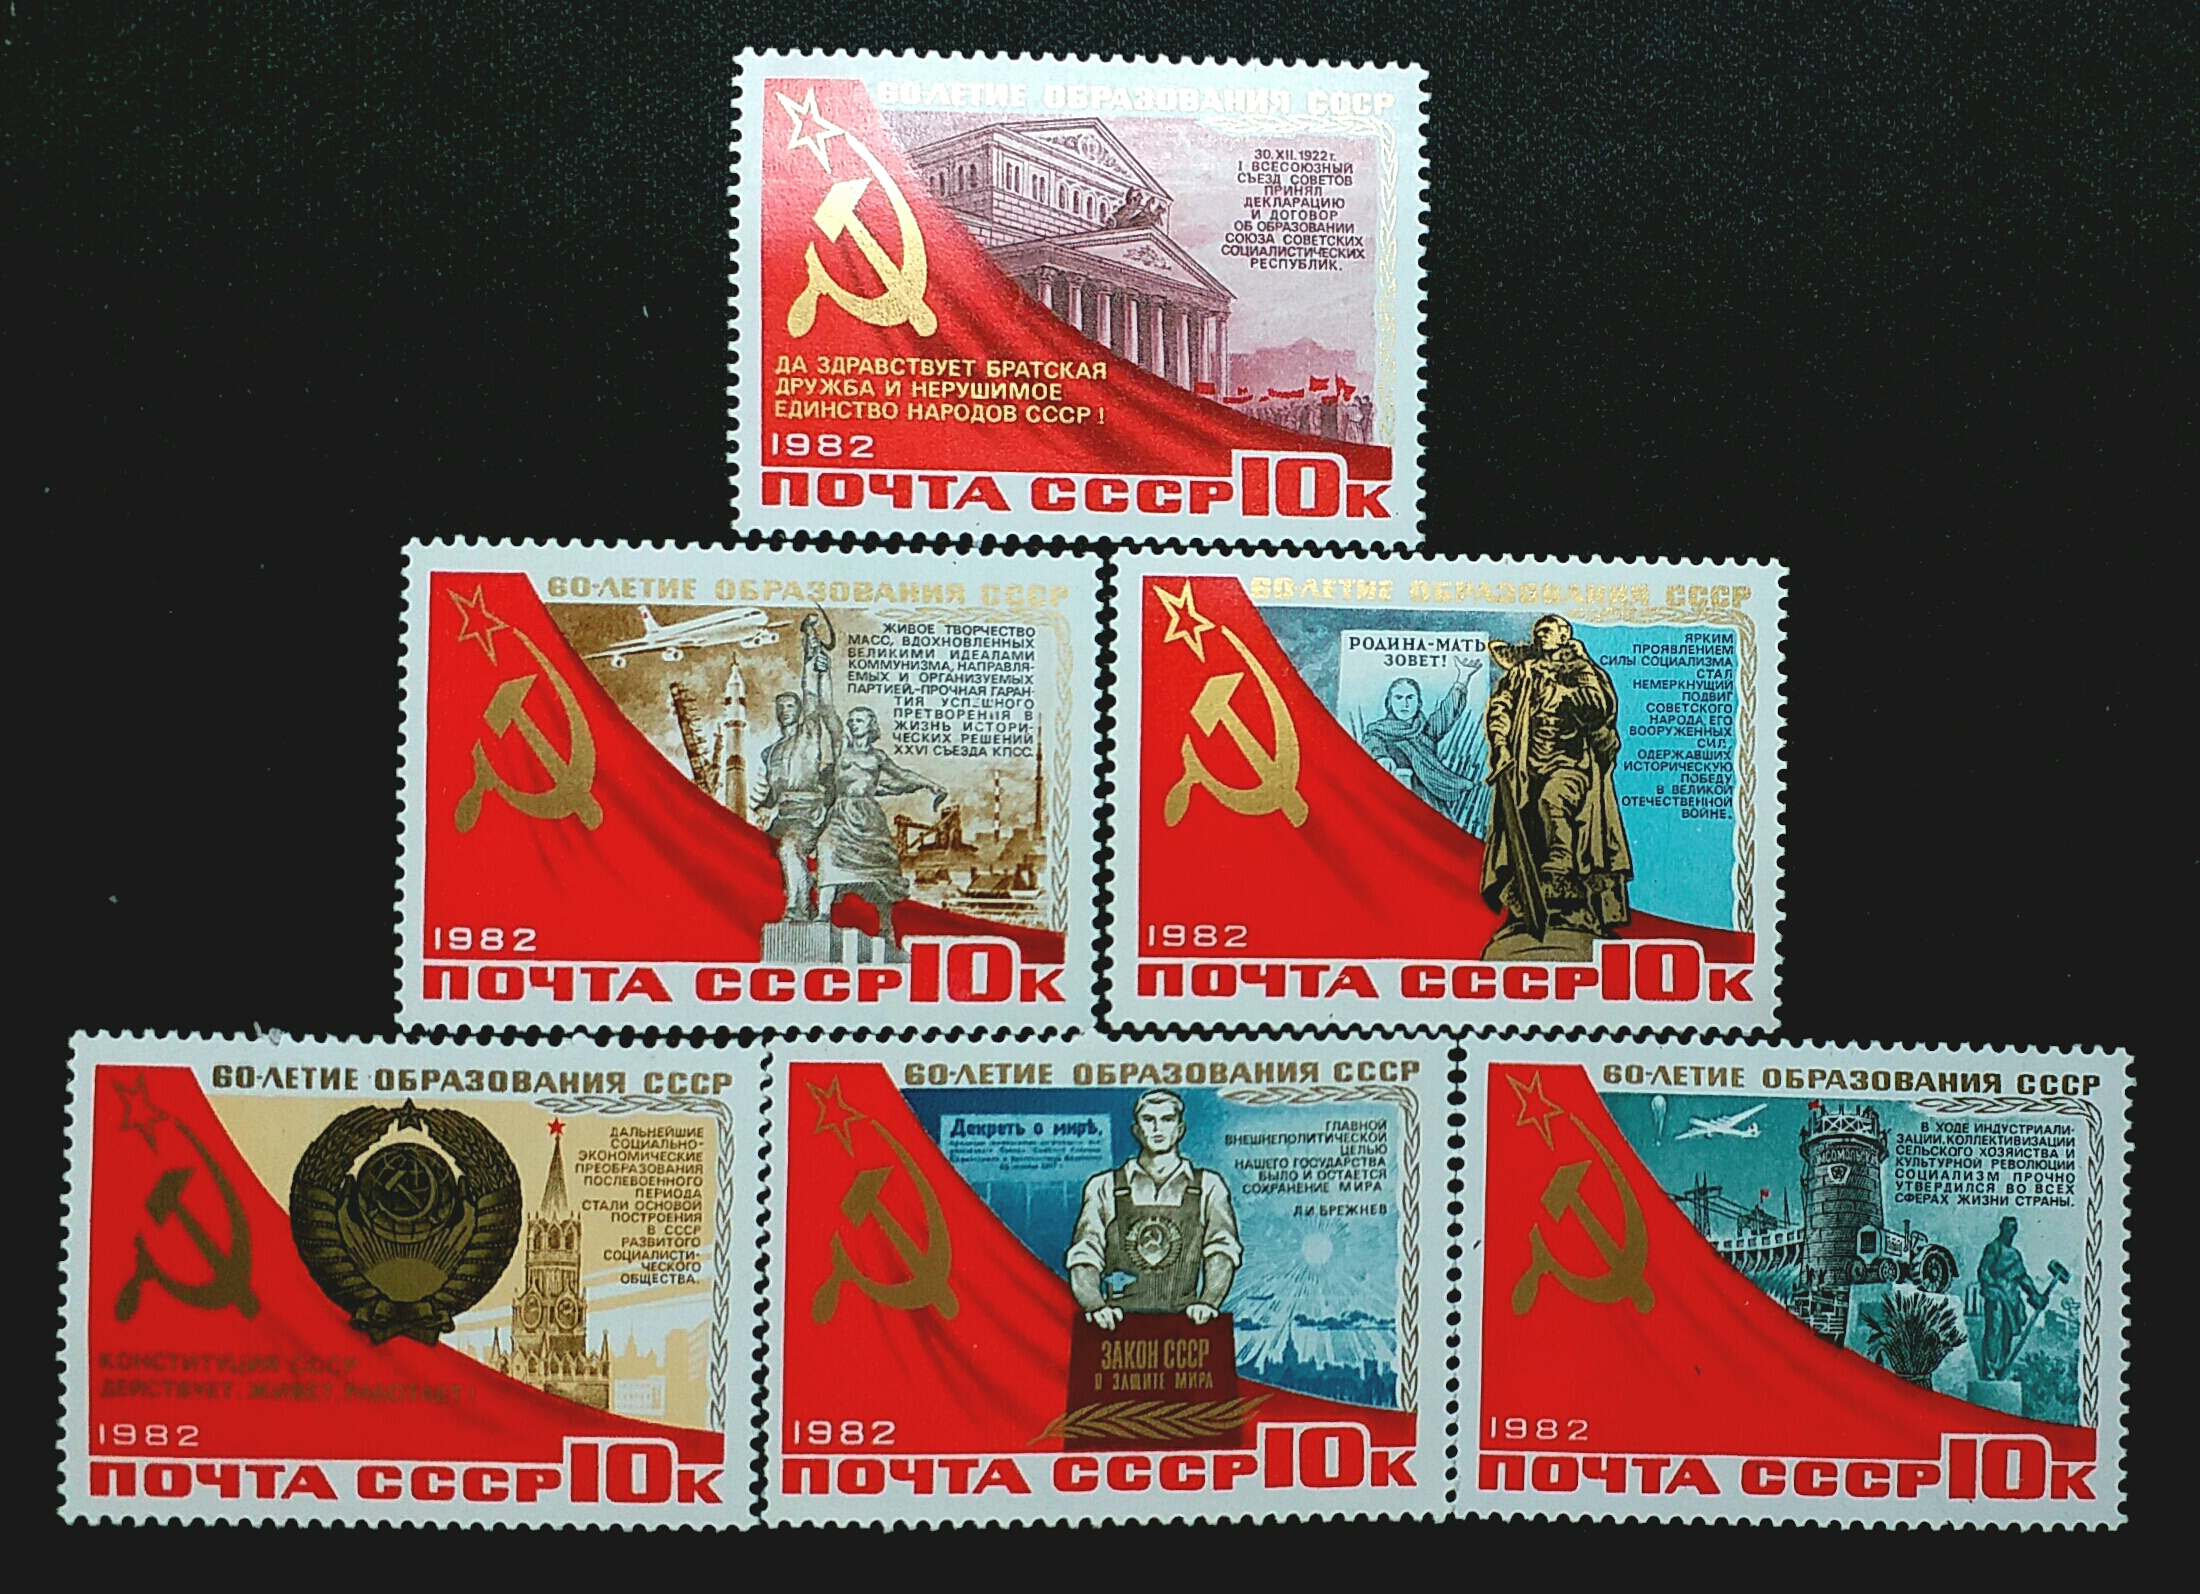 最后一套苏联建国周年纪念邮票:1982年,前苏联发